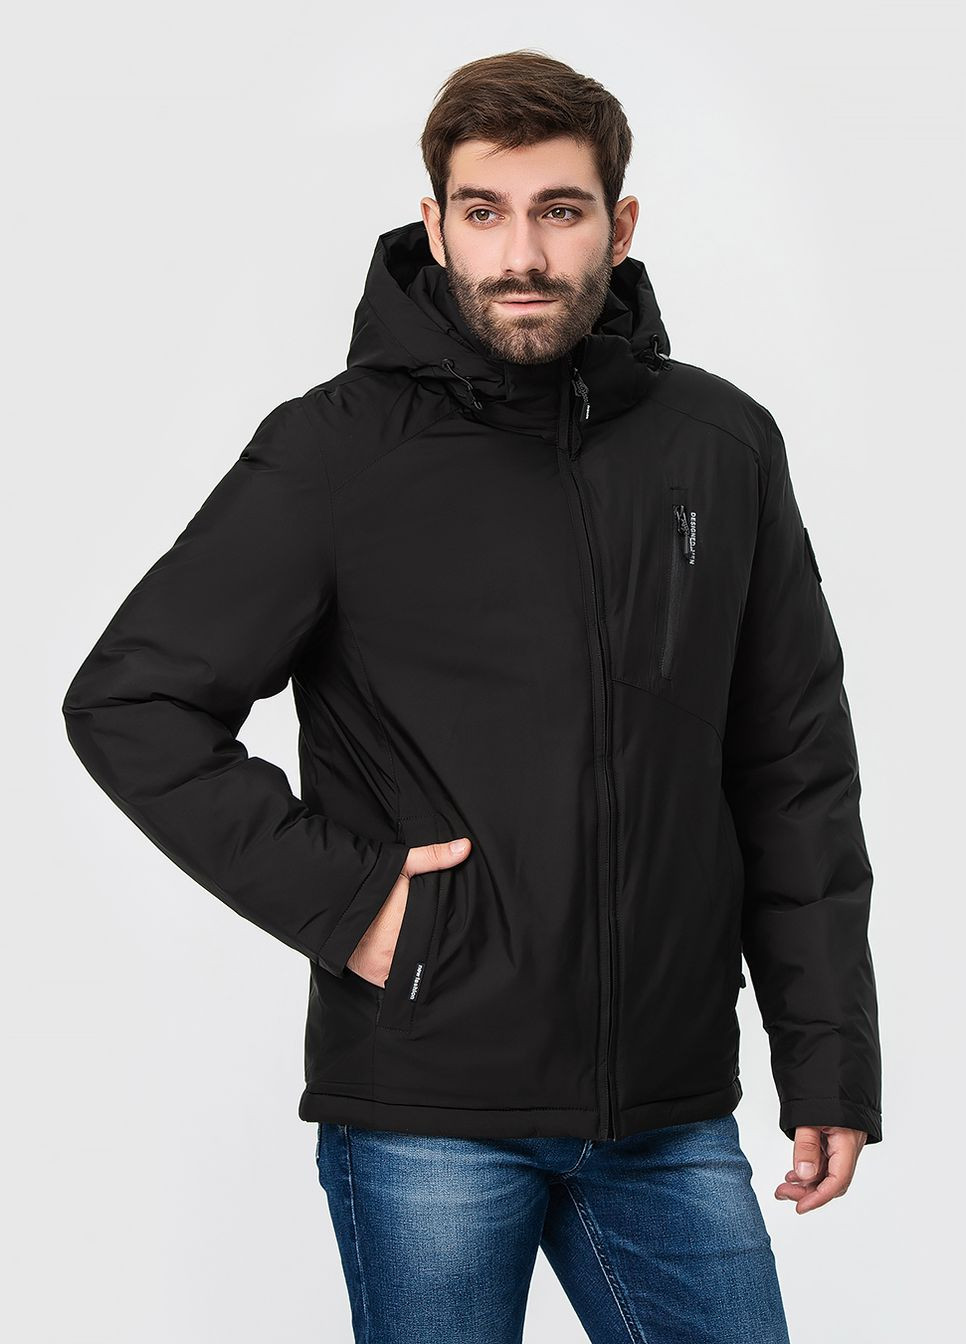 Чорна зимня утеплена куртка з капюшоном модель ZPJV 6087